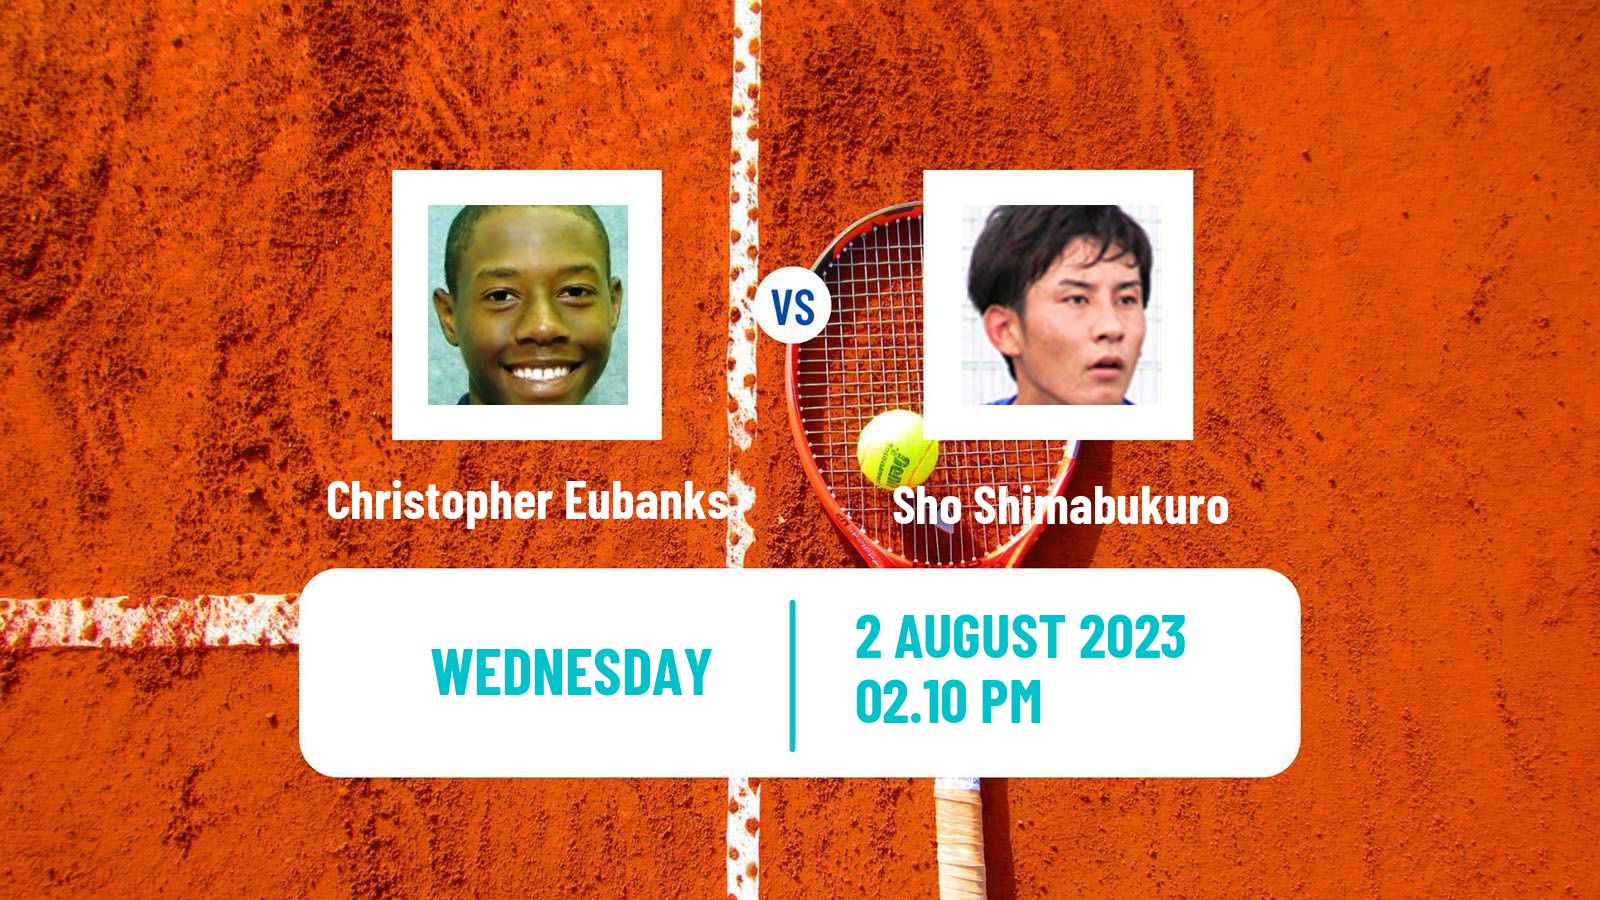 Tennis ATP Washington Christopher Eubanks - Sho Shimabukuro